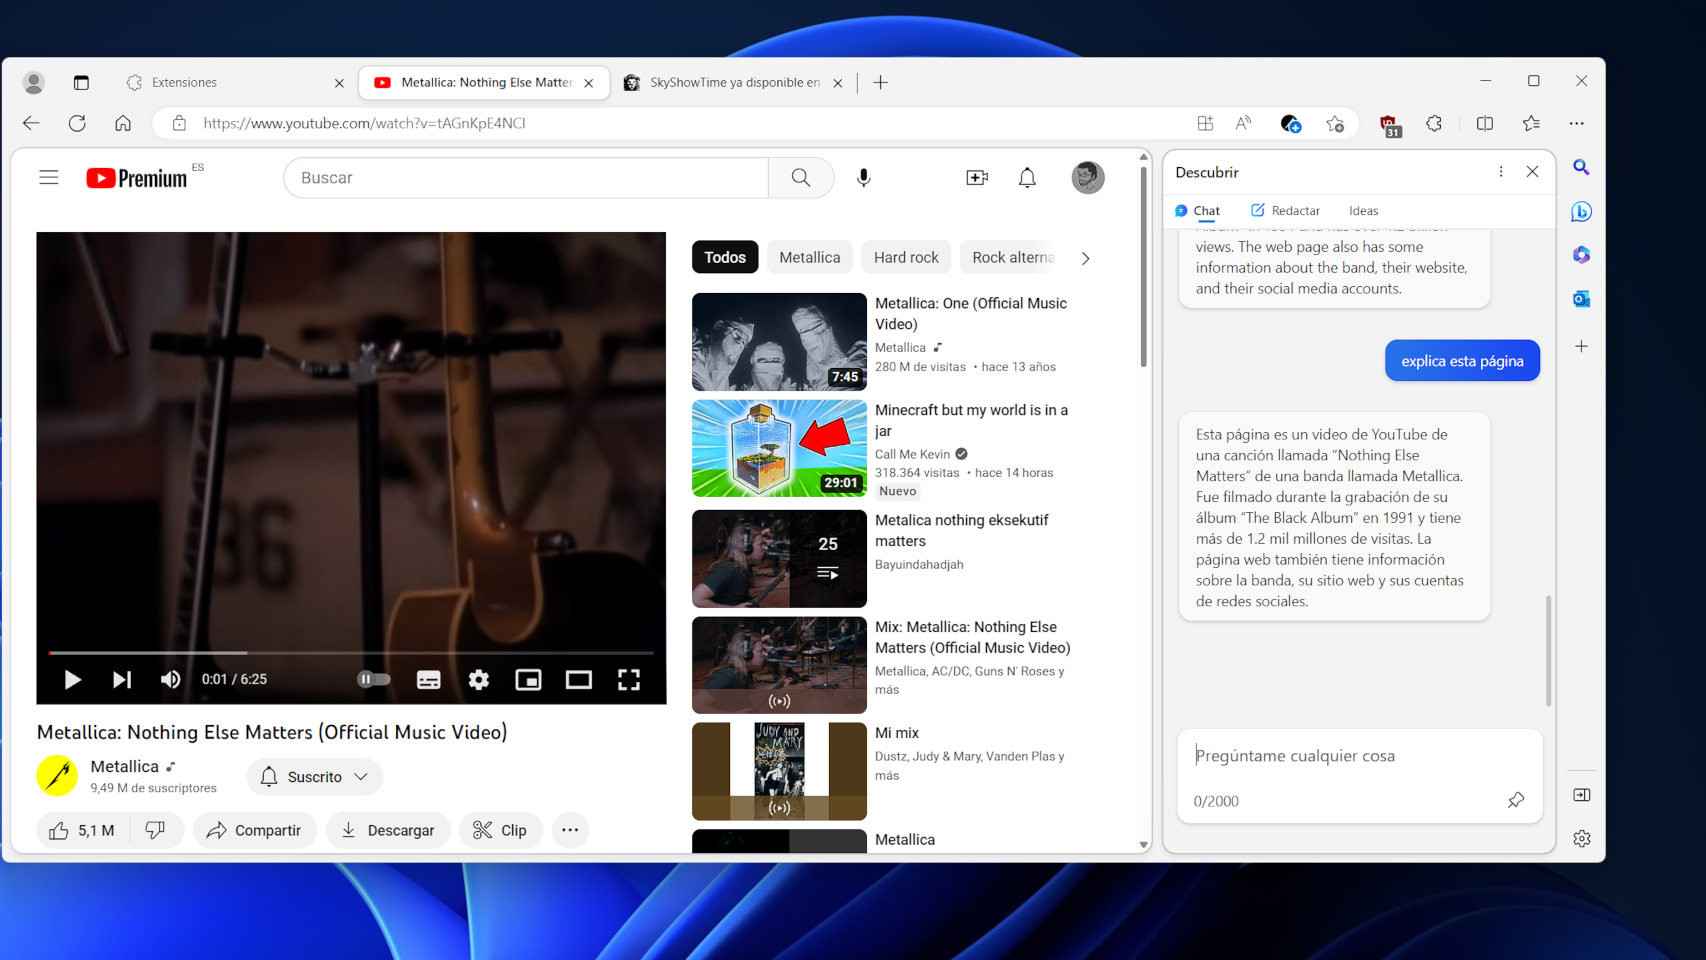 La IA de Bing ya es capaz de explicarnos vídeos de YouTube, un adelanto de GPT-4